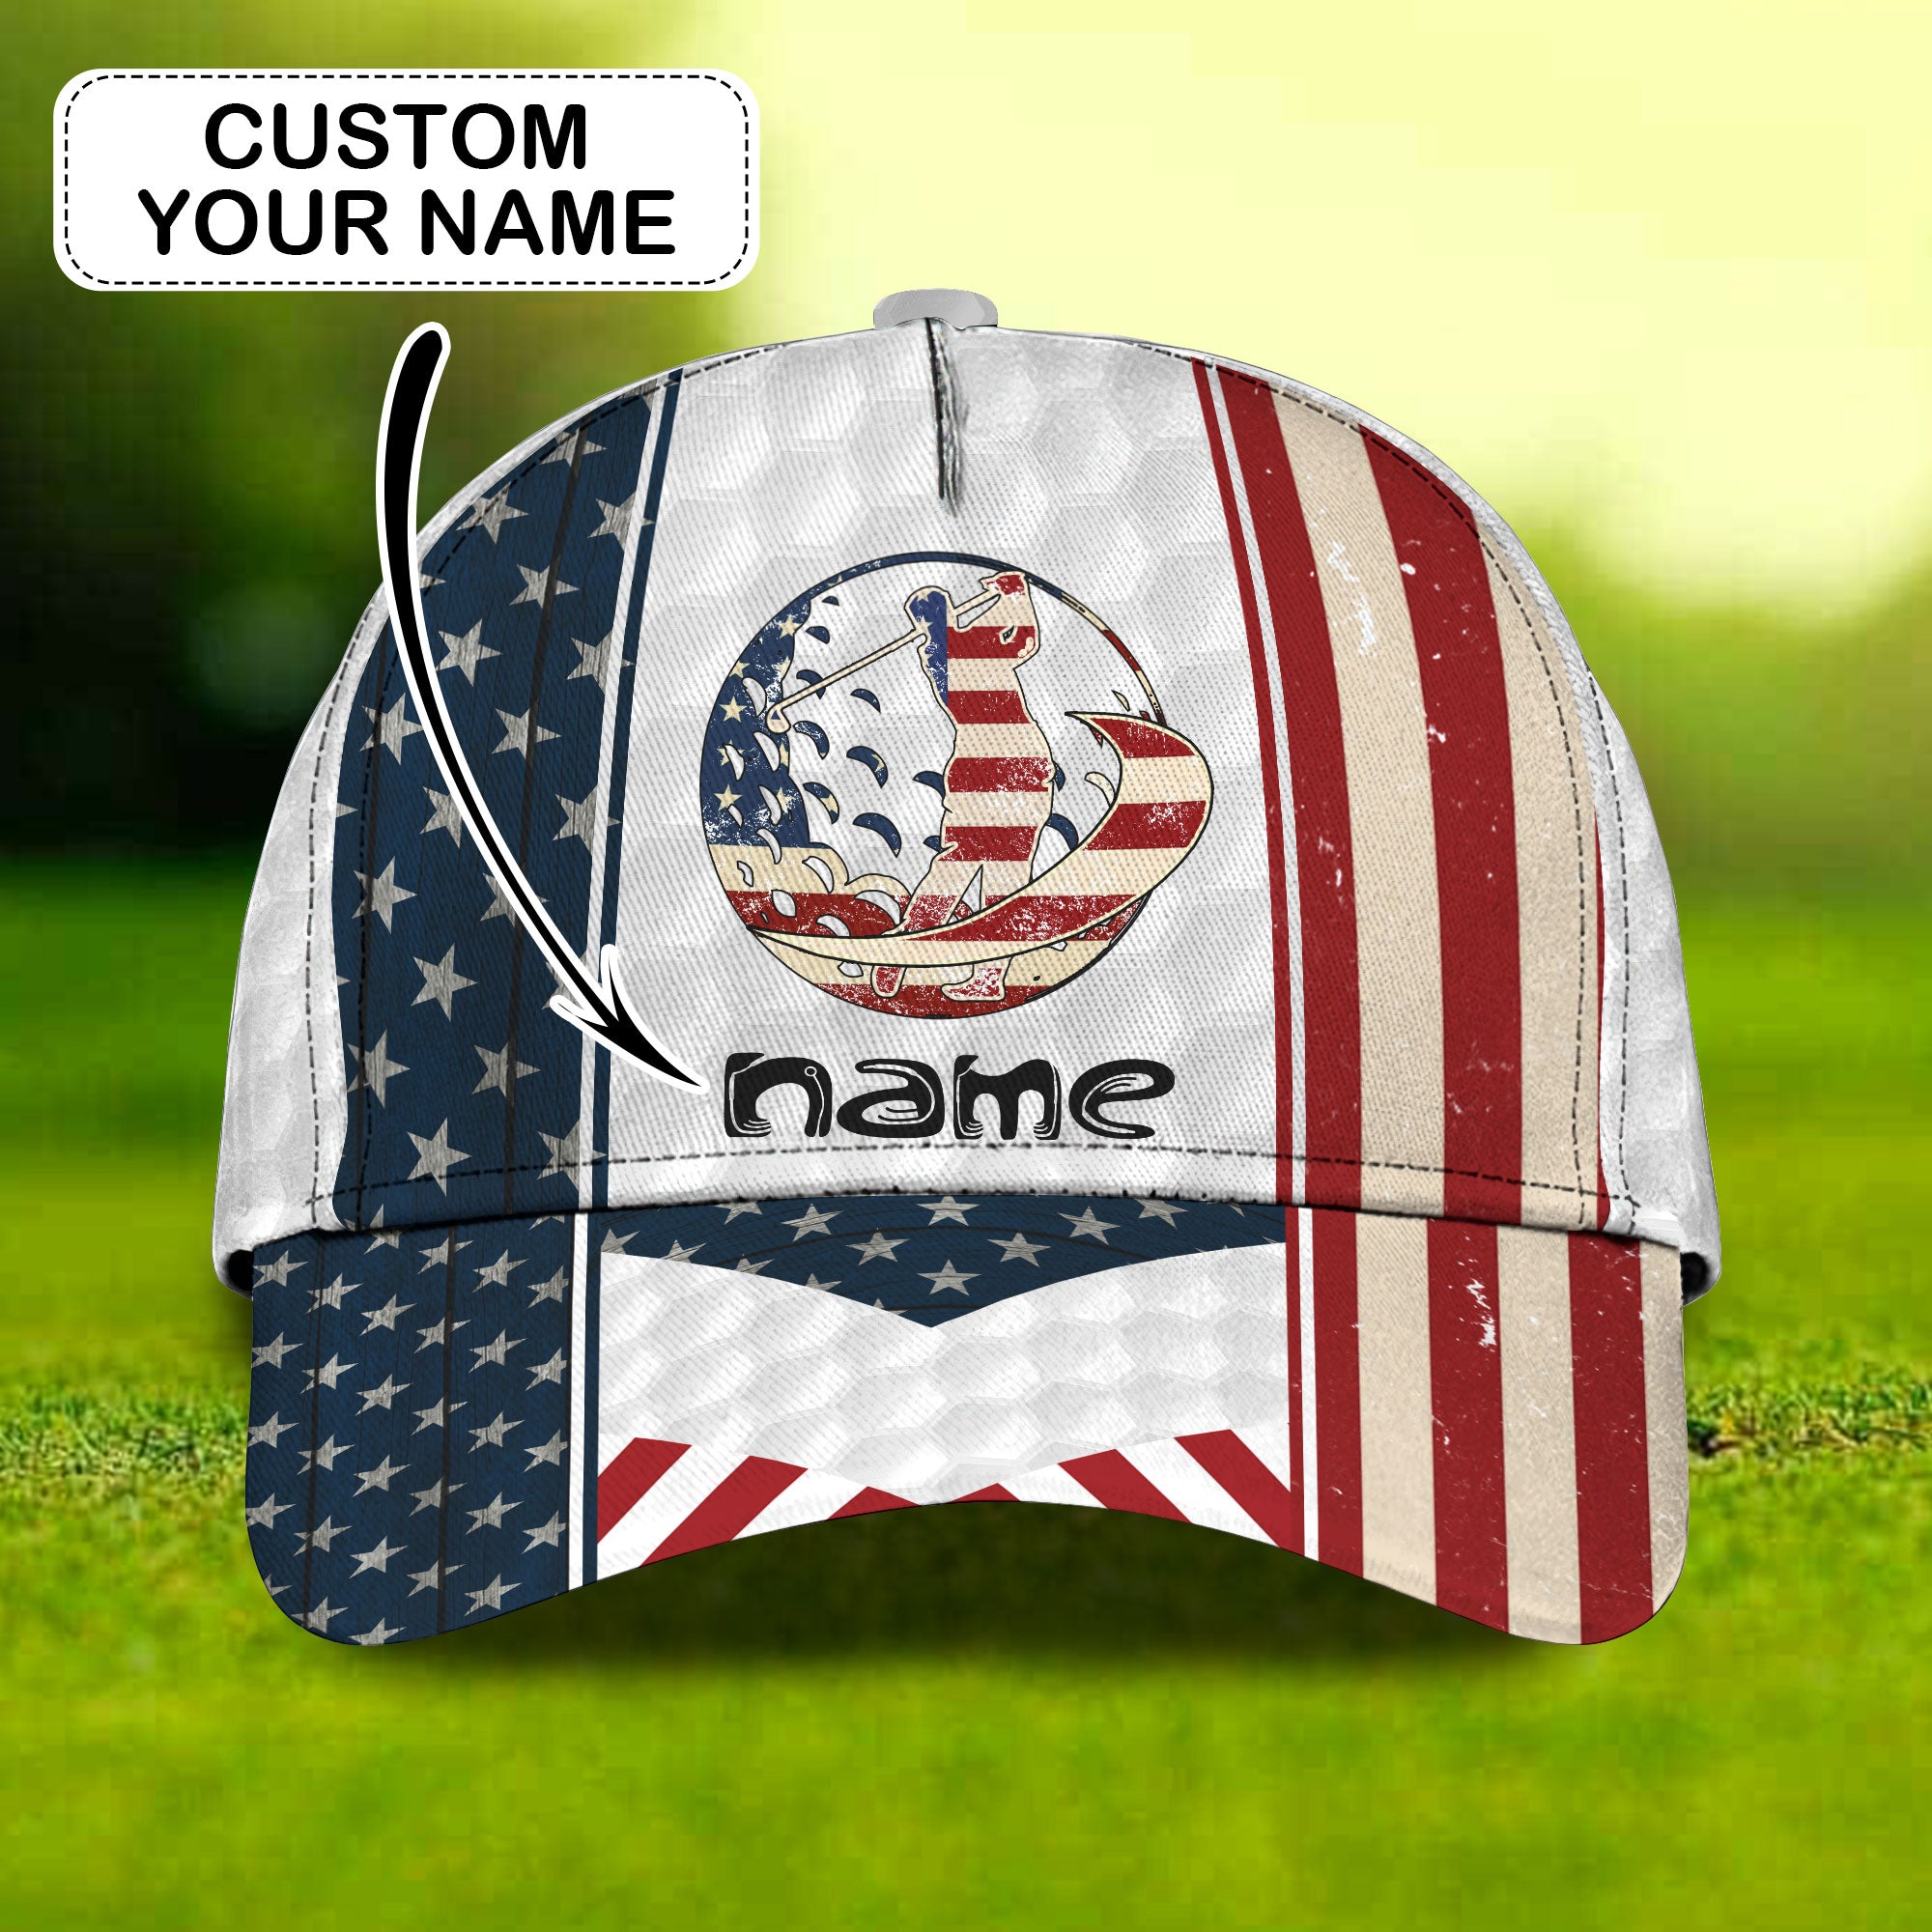 American Golfer (02) - Customize Cap - Ntp- 150